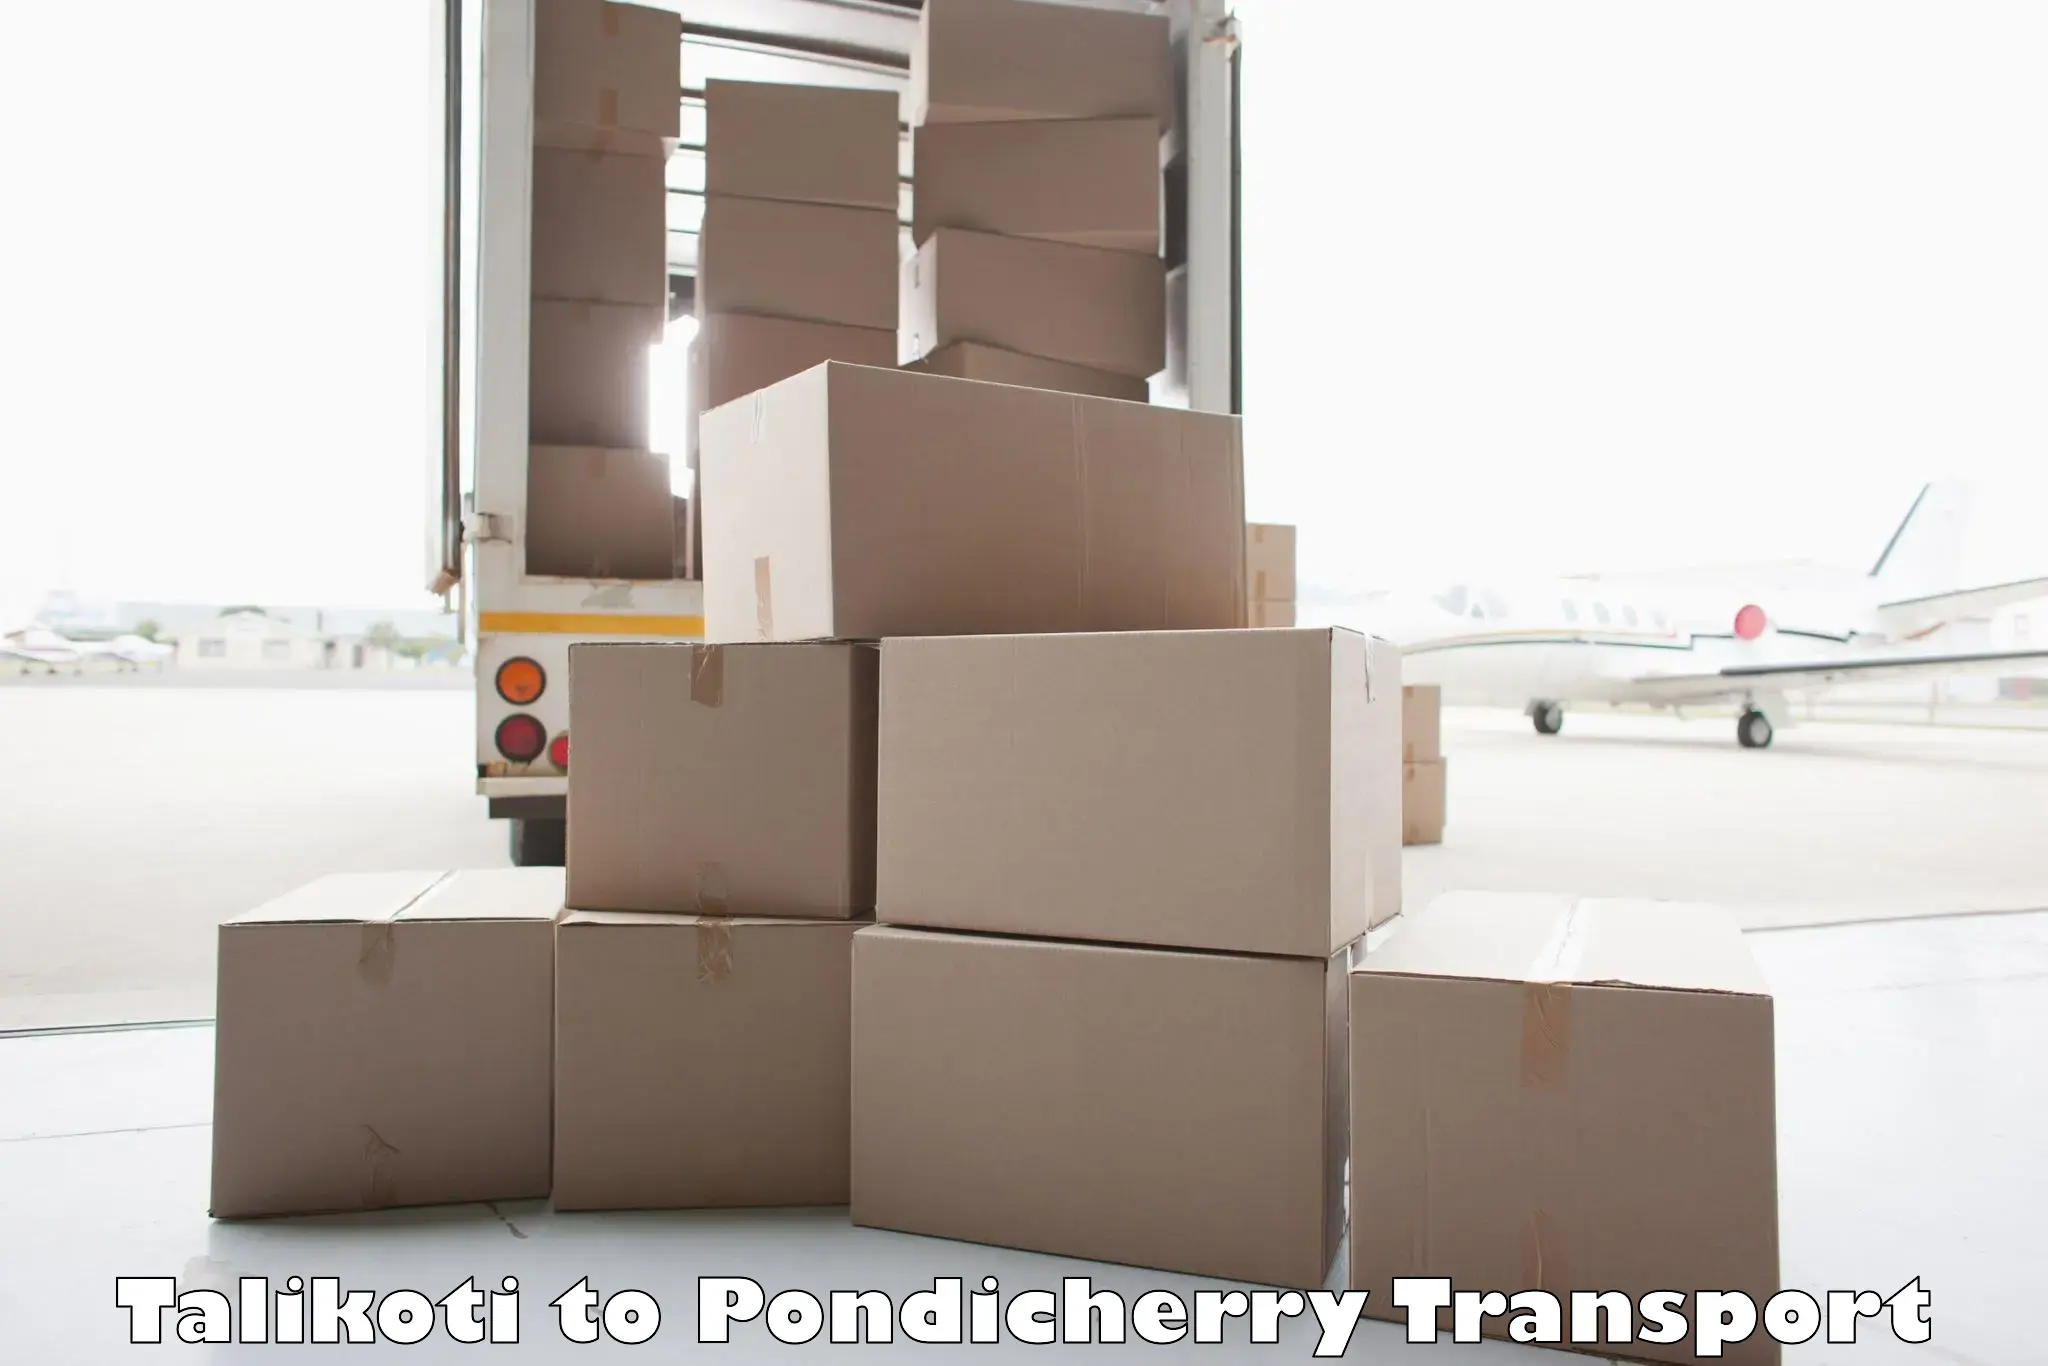 Cargo transportation services Talikoti to Pondicherry